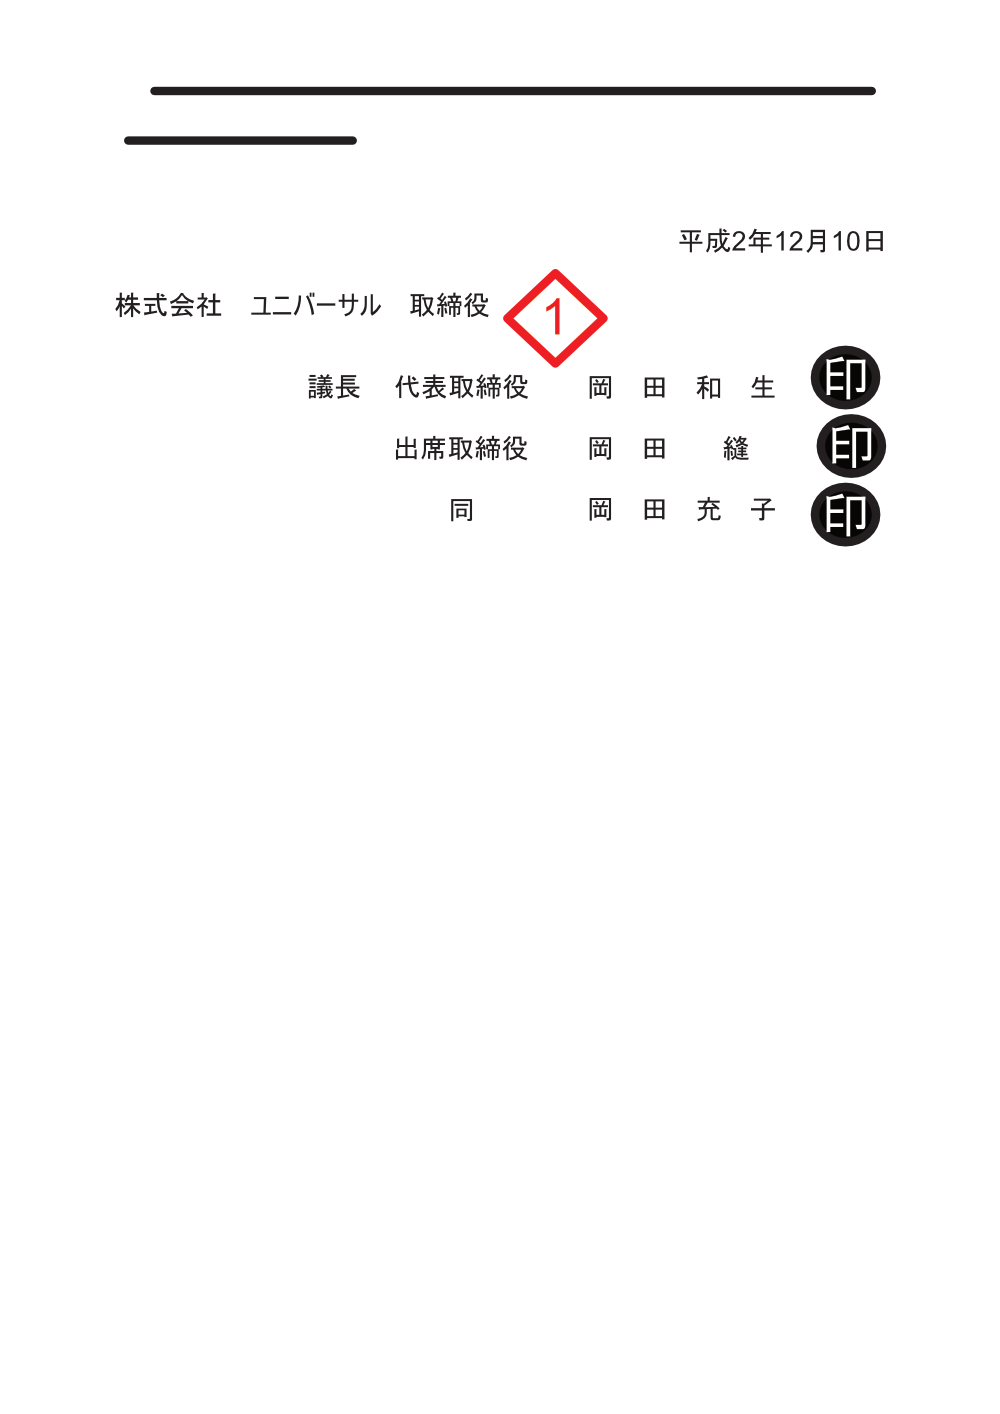 株式会社ユニバーサル平成2年12月10日付け取締役会議事録2